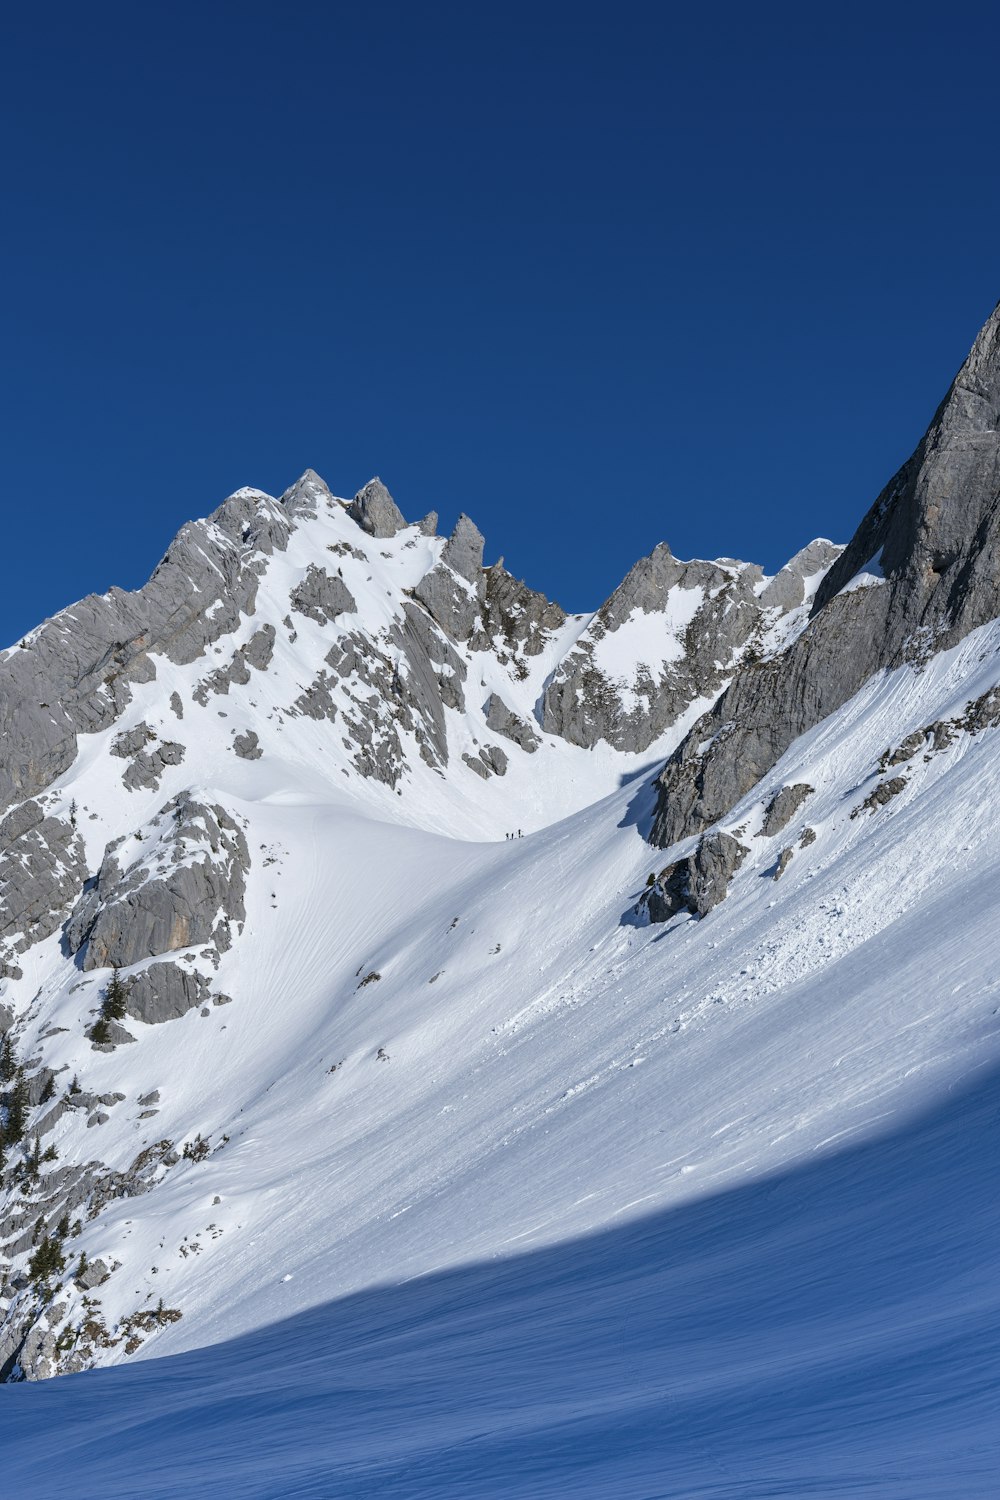 Un homme descend une pente enneigée à skis